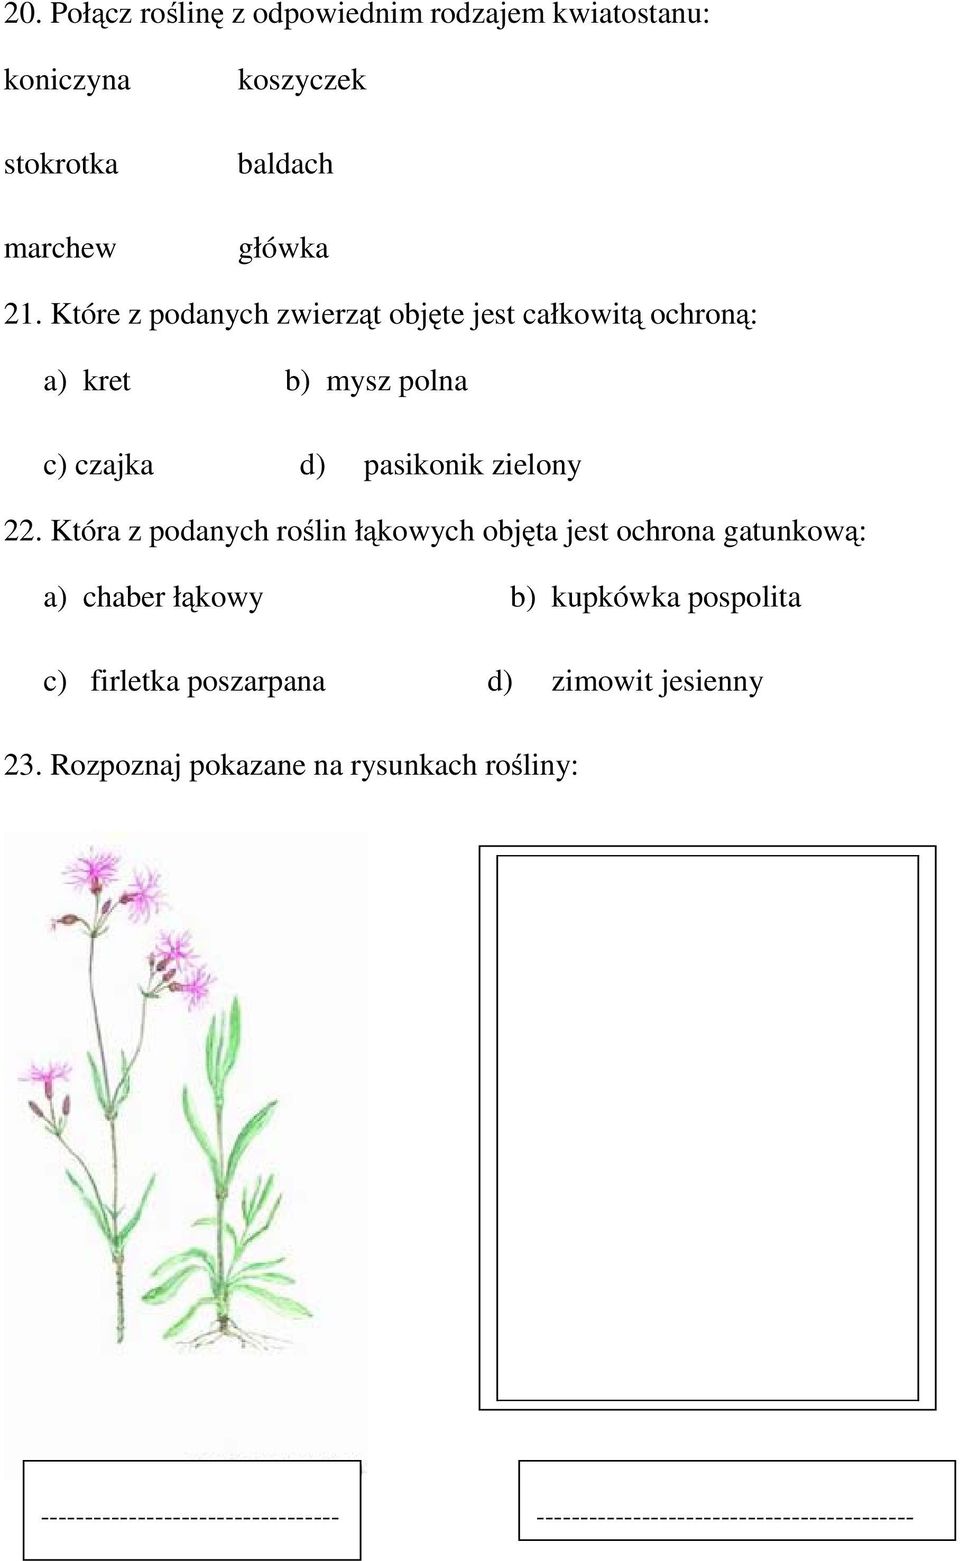 Która z podanych roślin łąkowych objęta jest ochrona gatunkową: a) chaber łąkowy b) kupkówka pospolita c) firletka